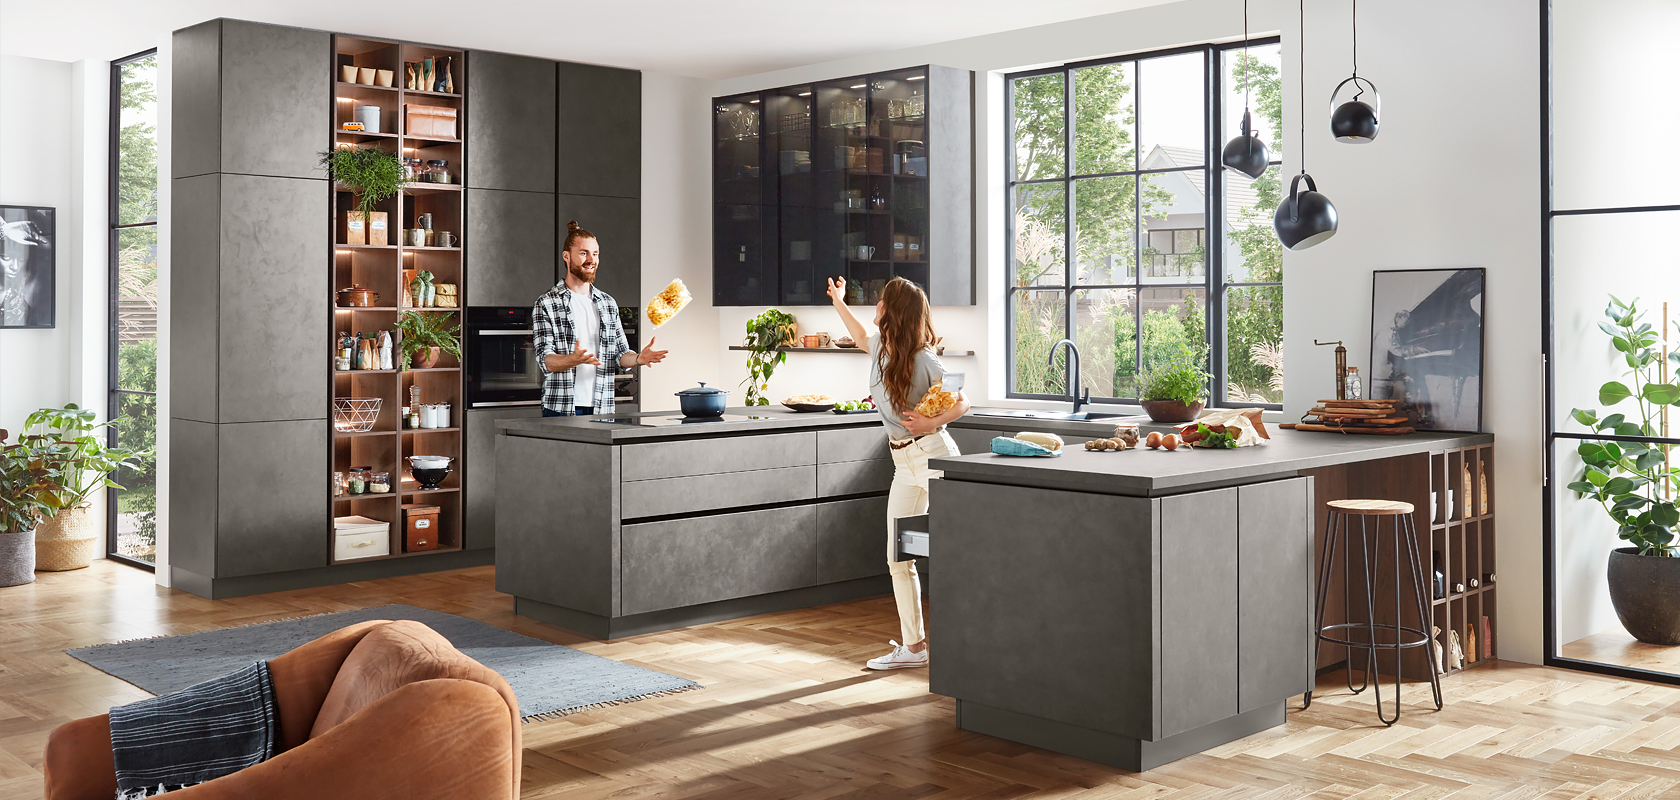 Design moderno della cucina con mobili grigi eleganti, elettrodomestici integrati e un'isola centrale. Una coppia si diverte a cucinare nell'ambiente ben illuminato e spazioso.